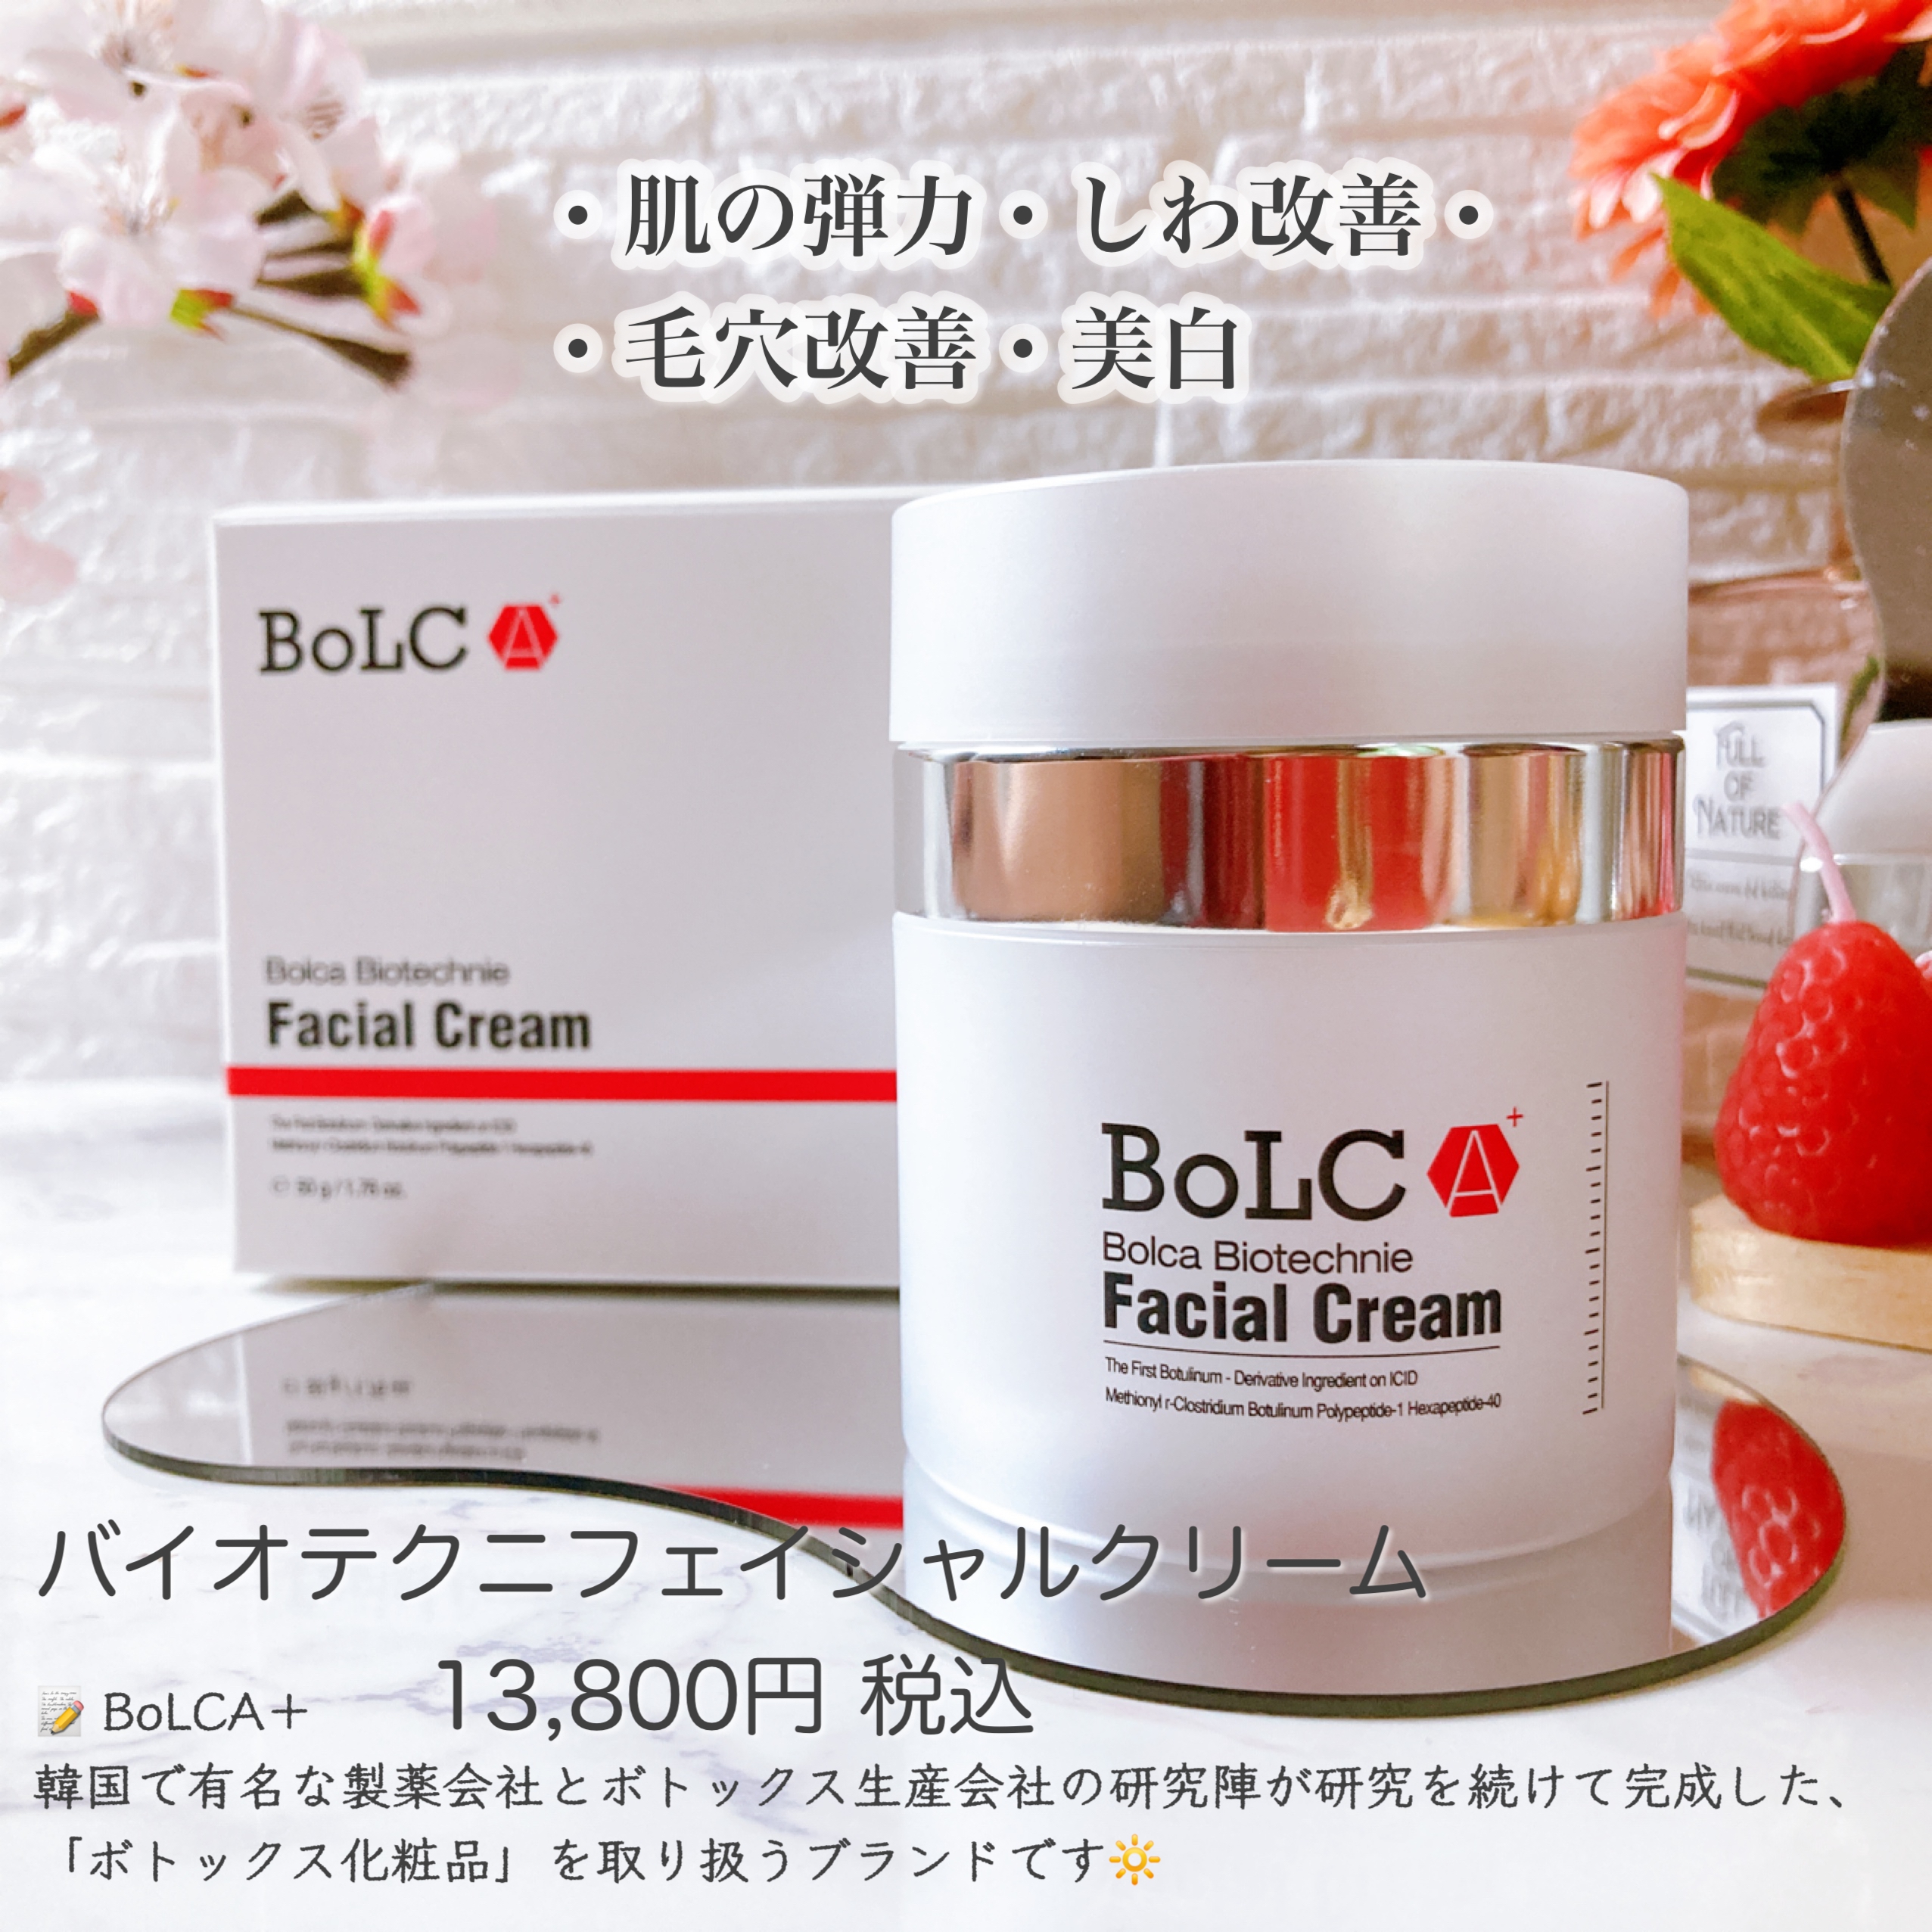 BoLCA+(ボルカ) バイオテクニフェイシャルクリームの良い点・メリットに関するメグさんの口コミ画像1